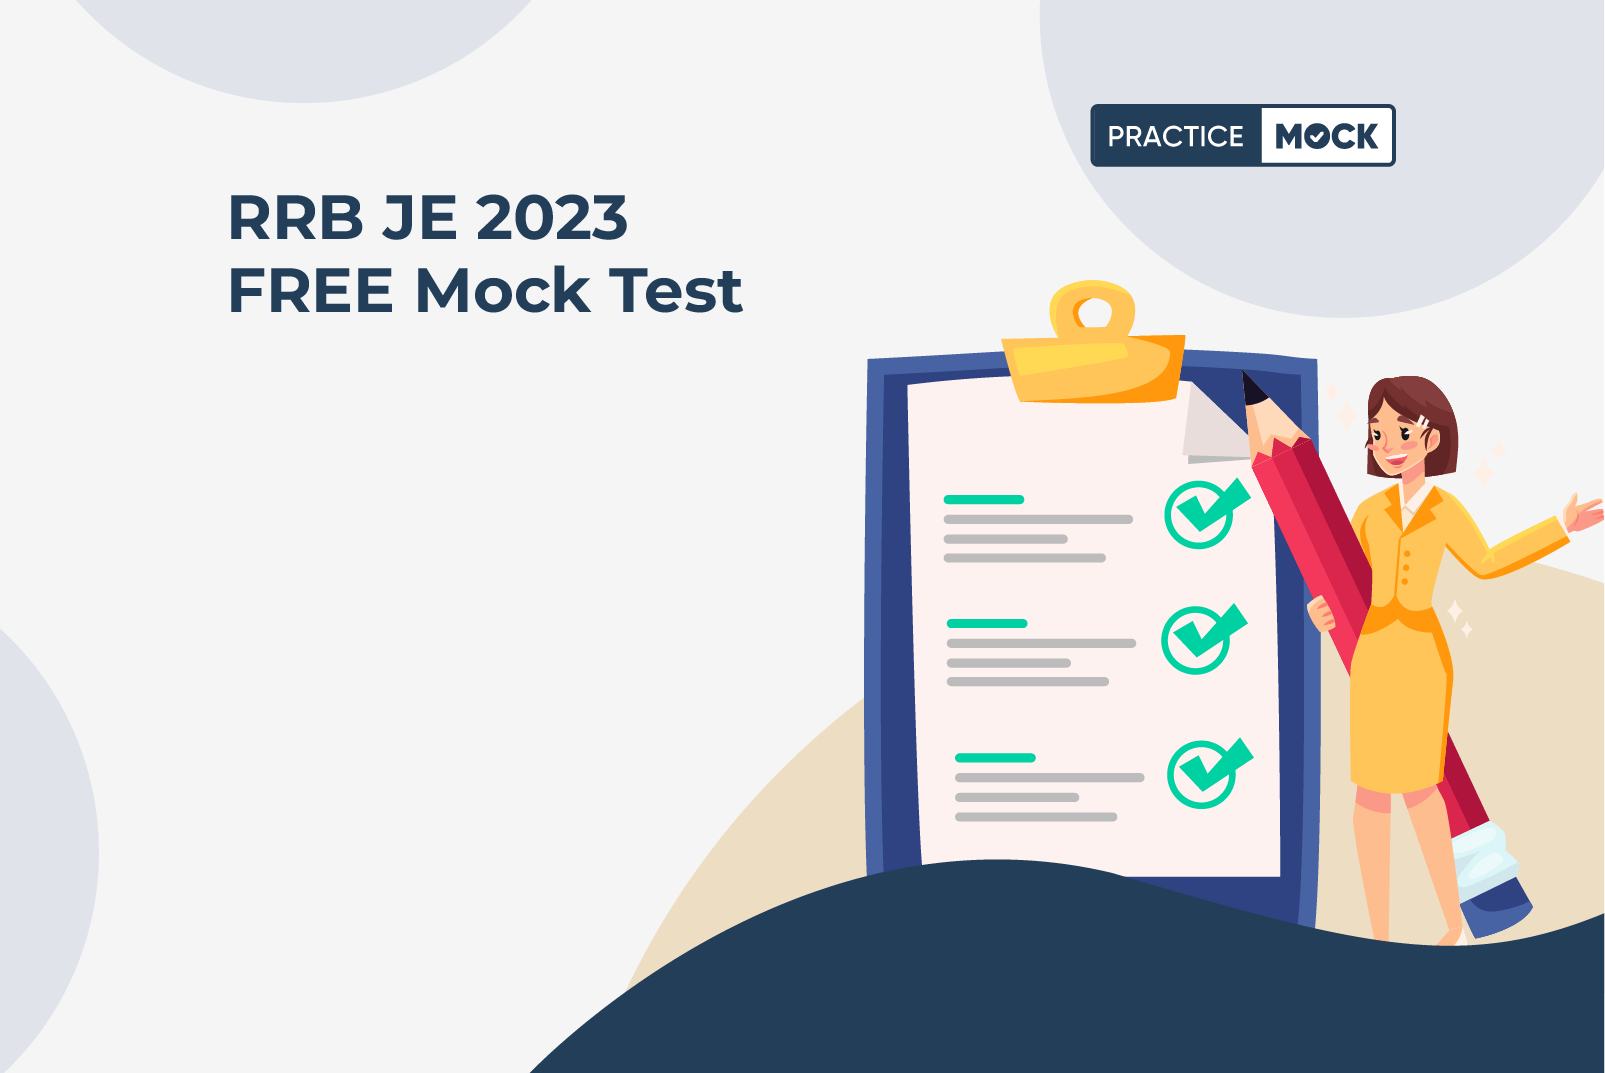 10 Benefits of RRB JE 2023 FREE Mock Test